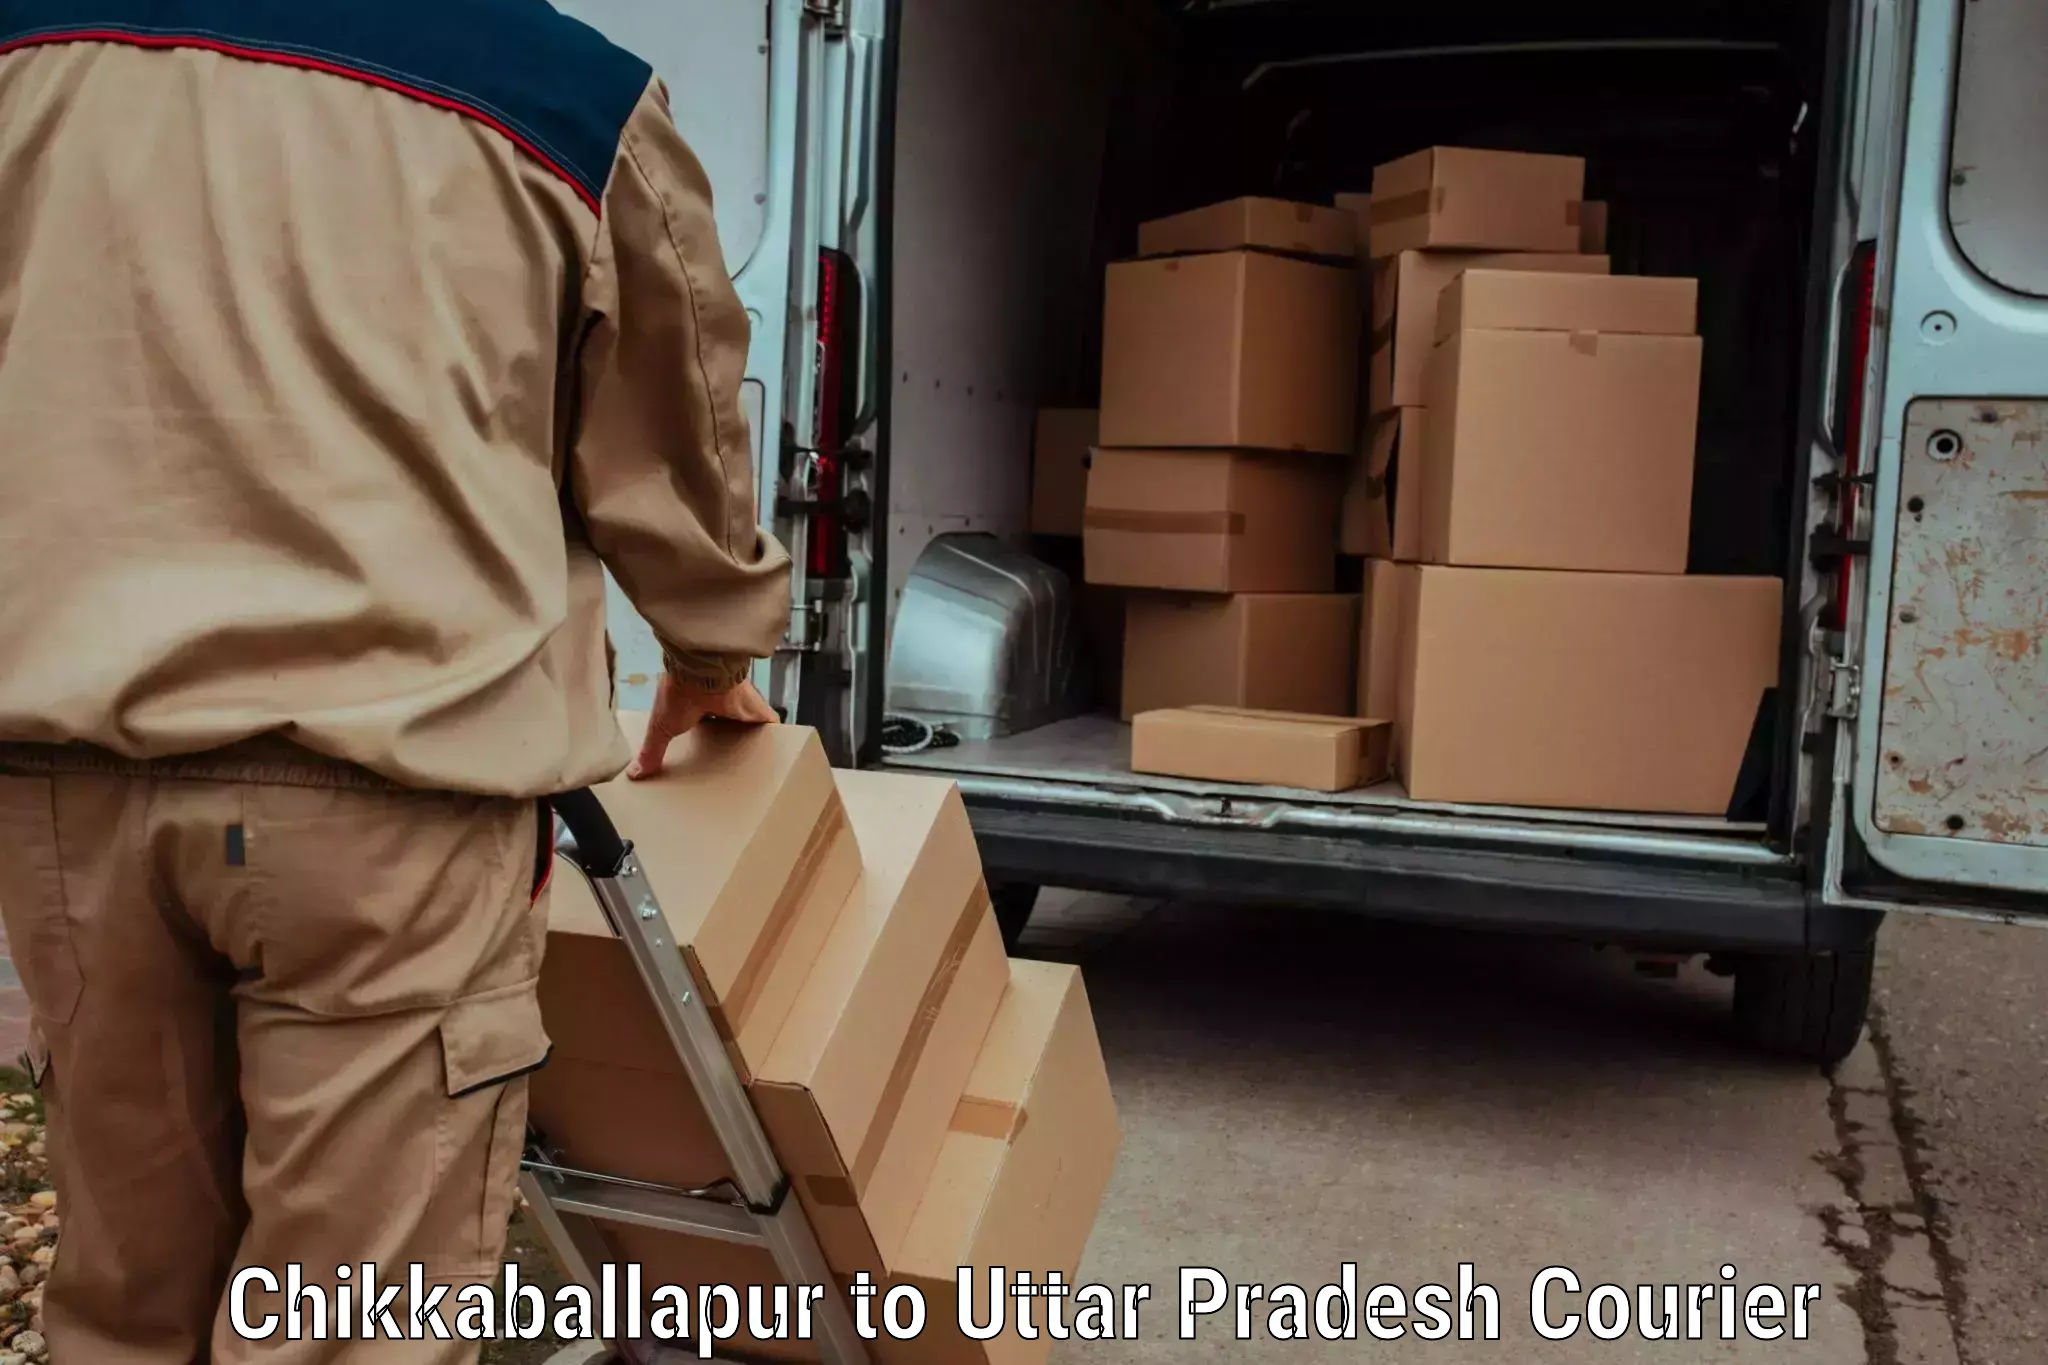 High-speed parcel service Chikkaballapur to Bisalpur